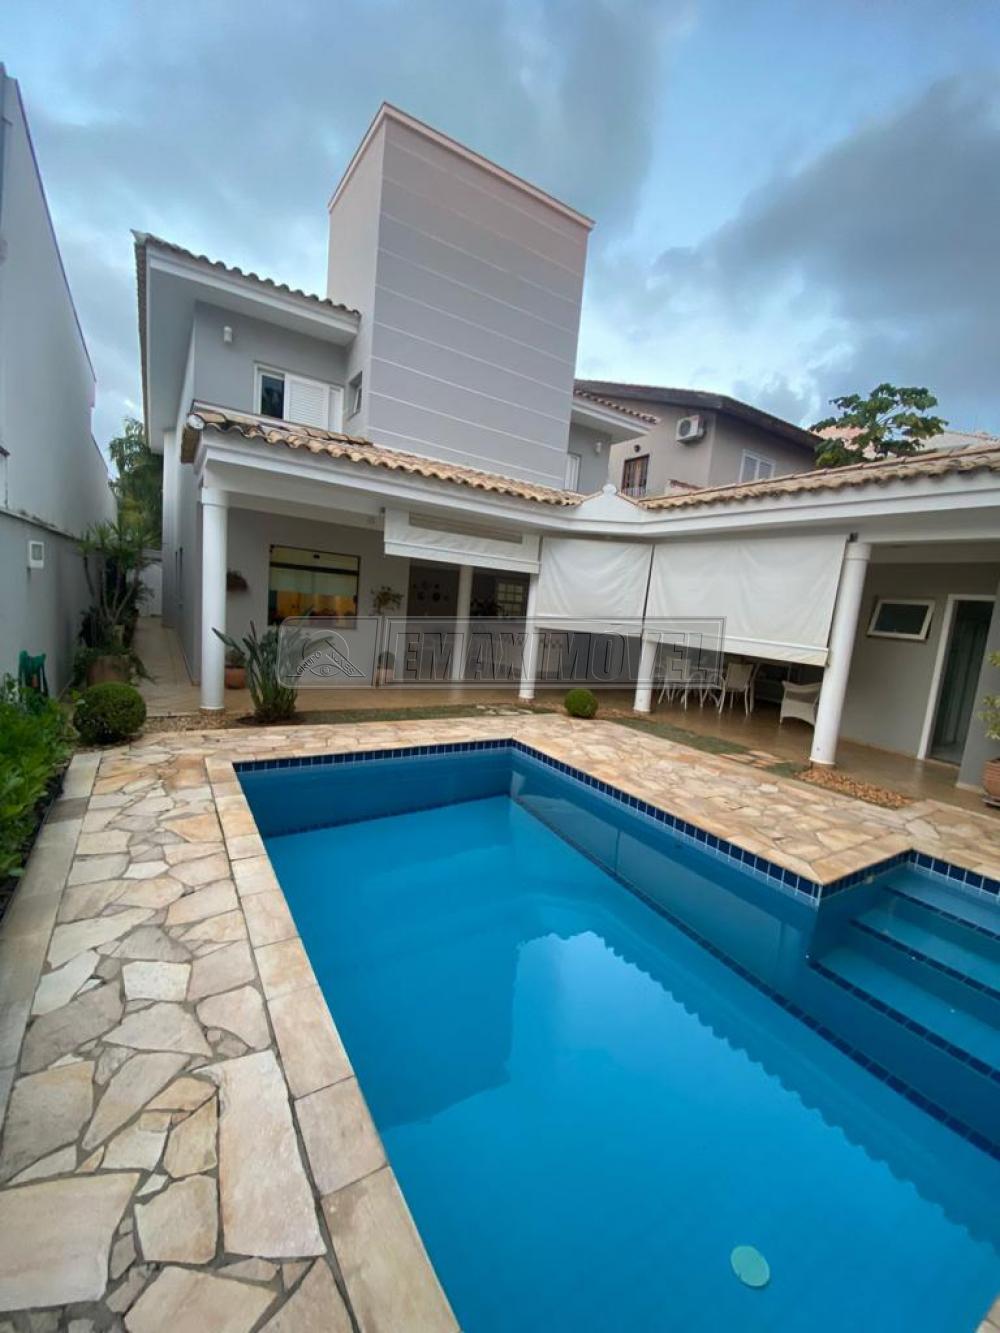 Comprar Casa / em Condomínios em Sorocaba R$ 1.700.000,00 - Foto 2